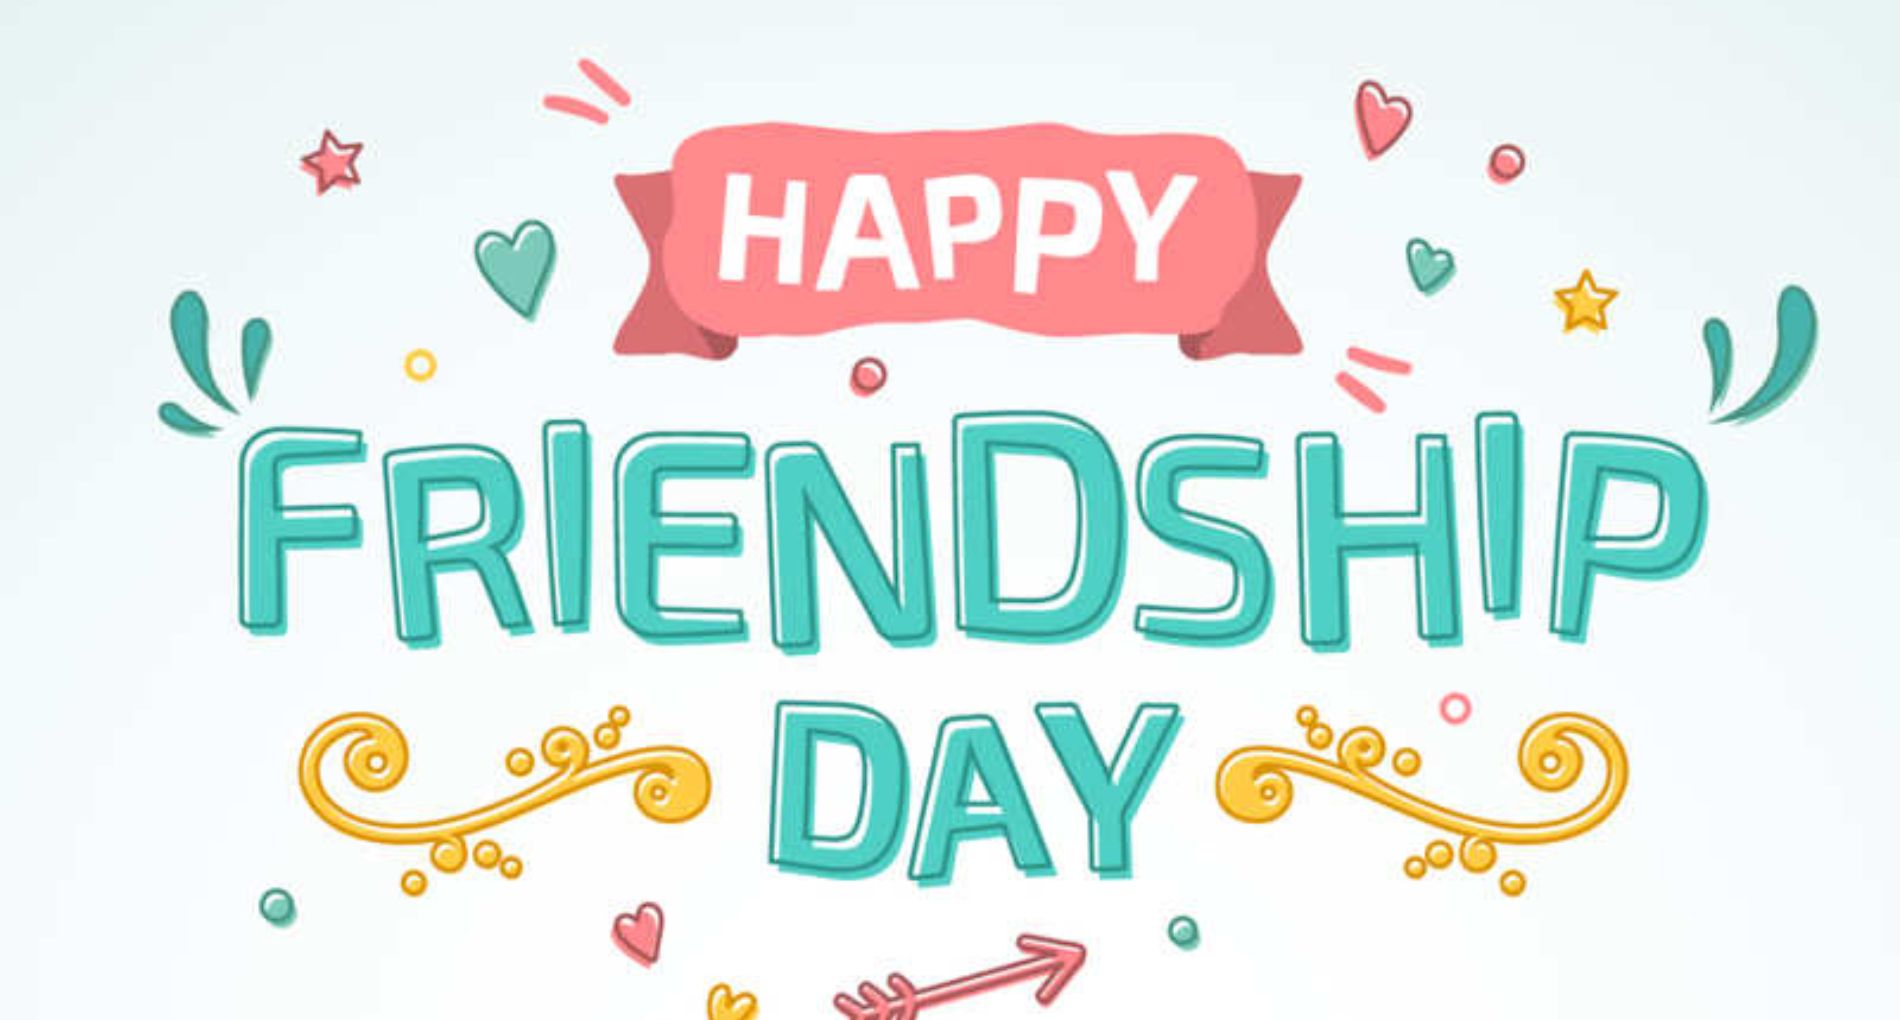 Happy Friendship Day 2022: फ्रेंडशिप डे के मौके पर करें अपने सभी दोस्तों को विश, भेजें प्यार भरे संदेश